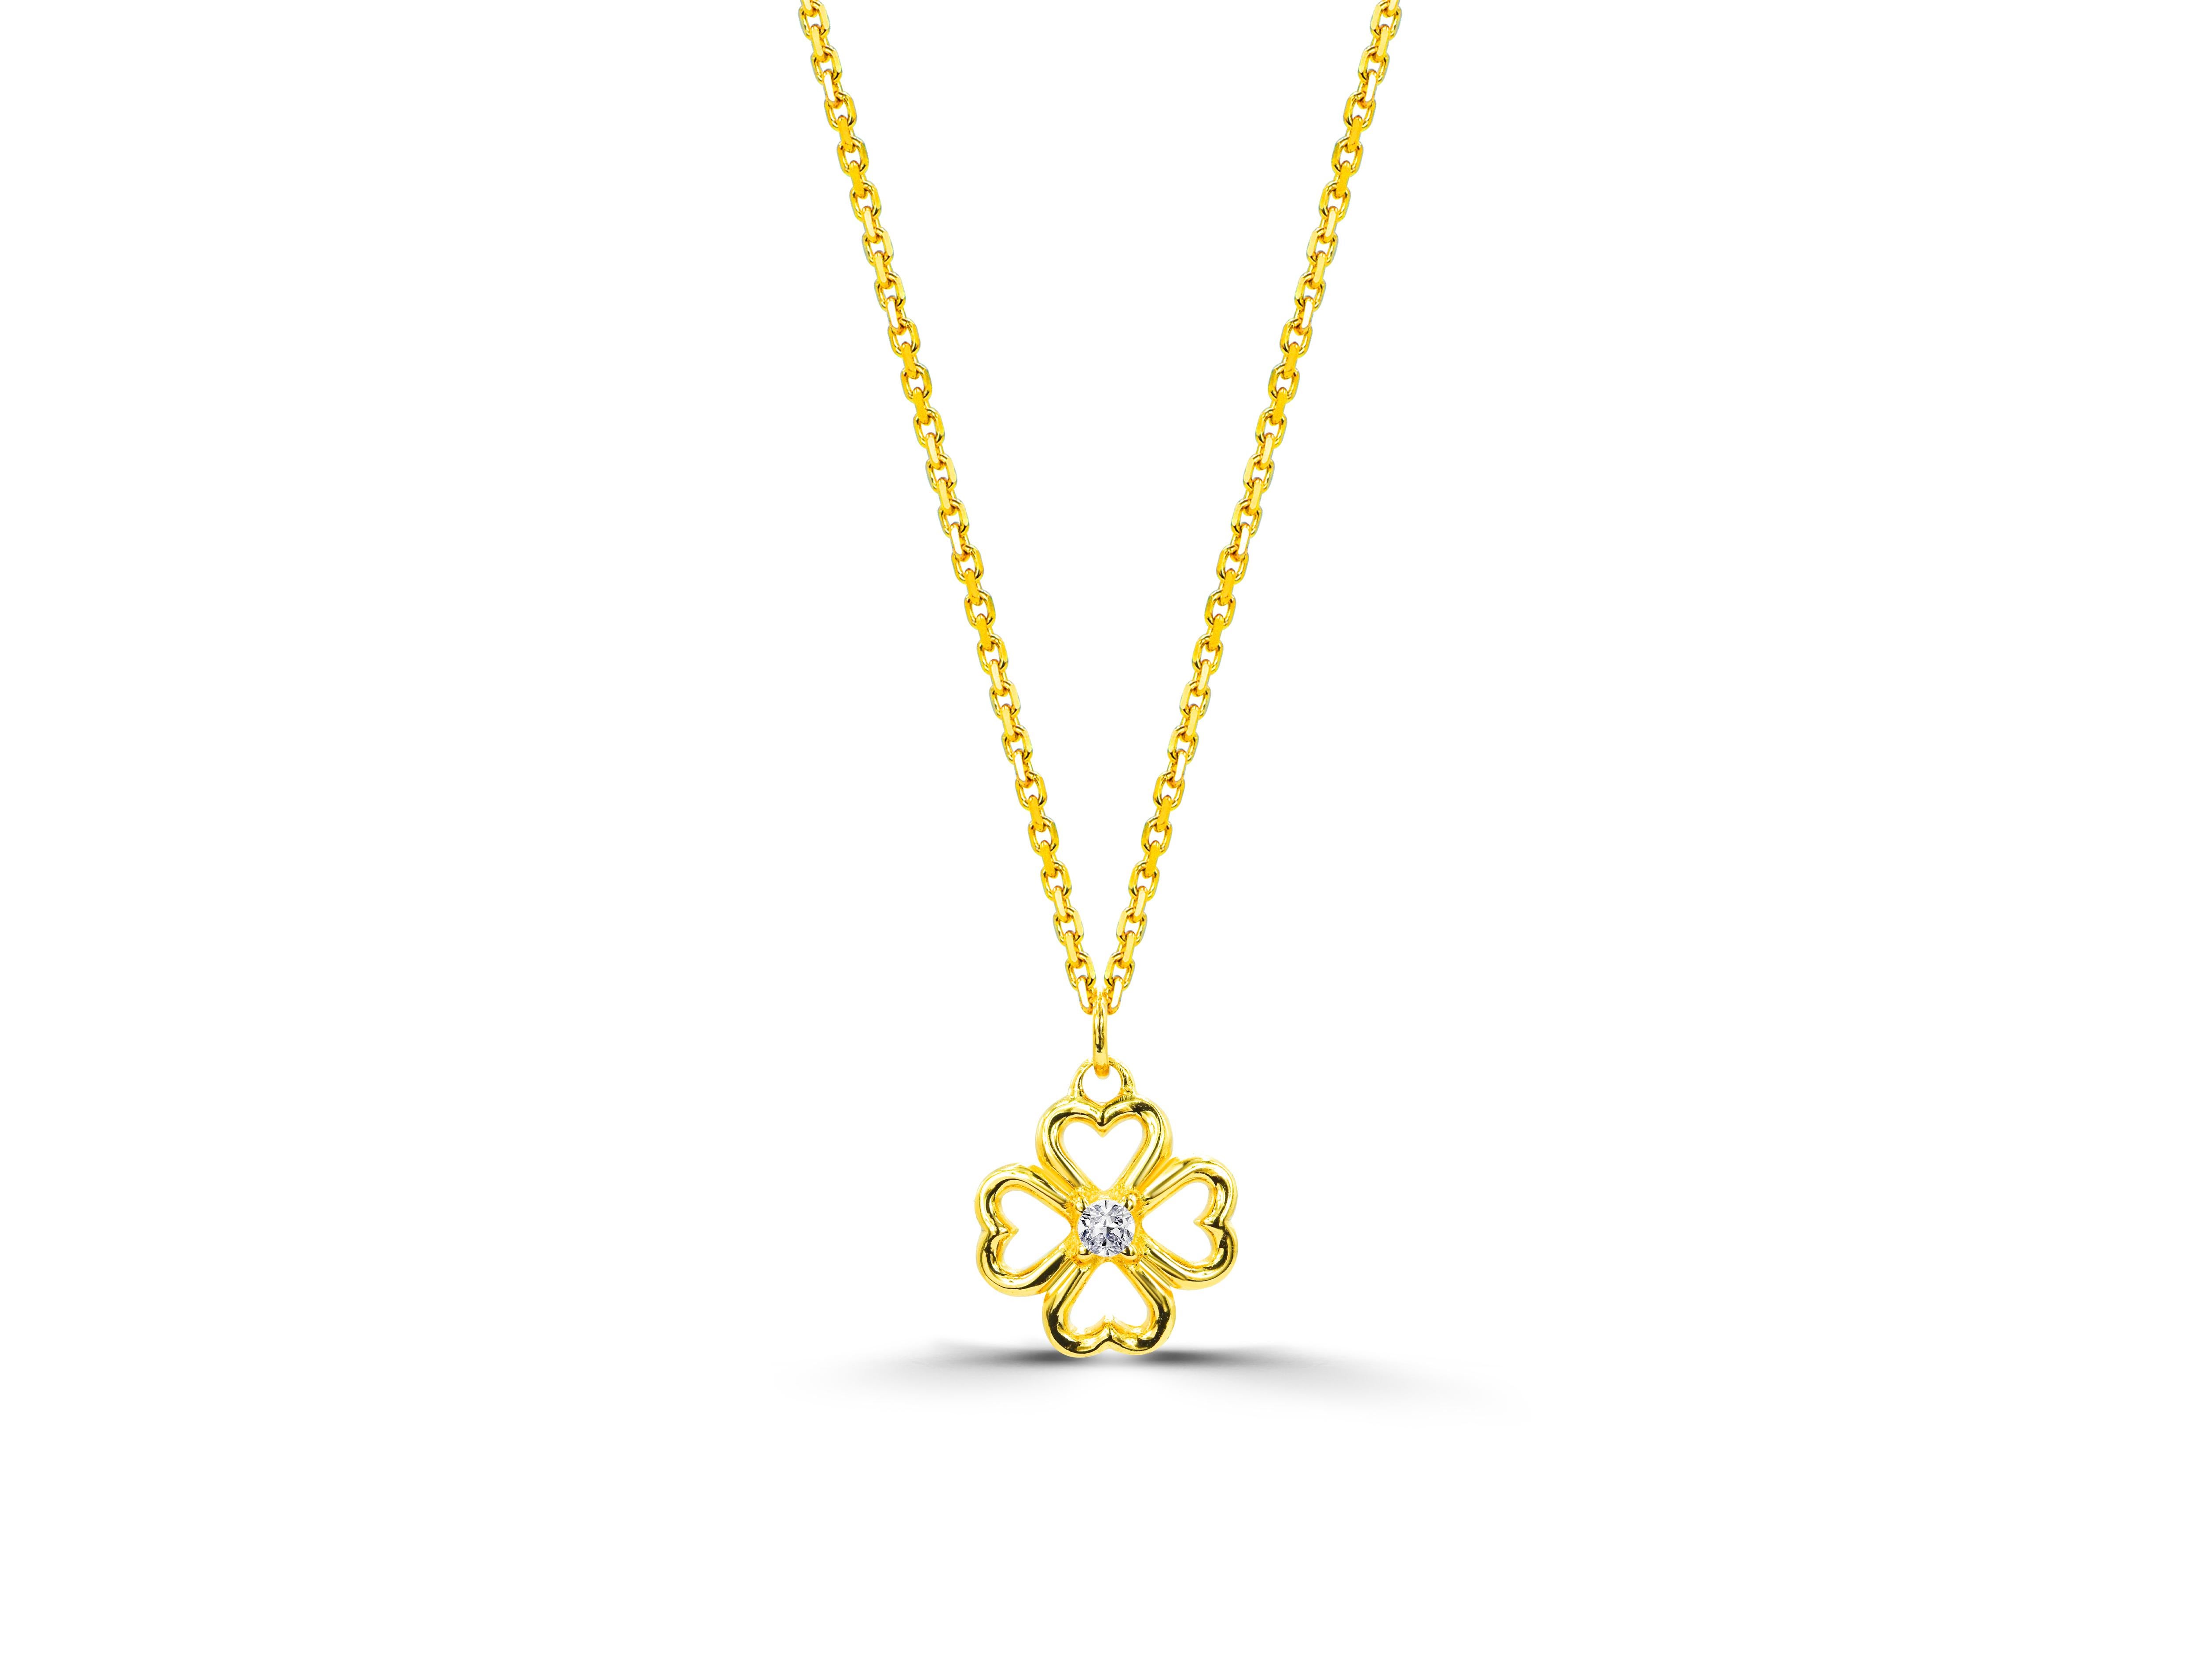 18k gold clover necklace